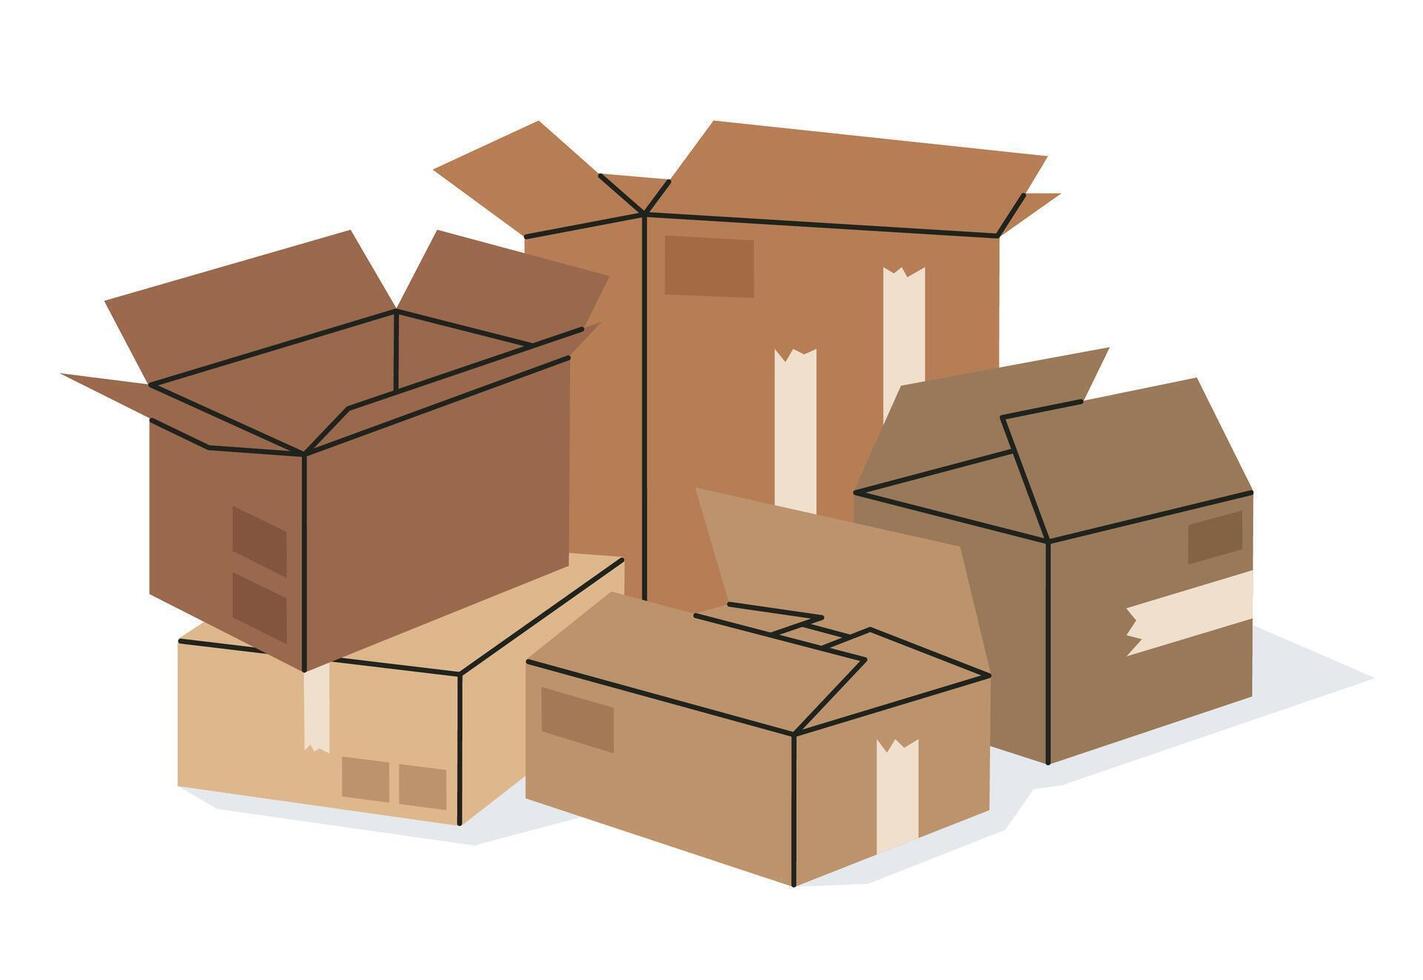 manojo de cajas mano dibujado cartulina apilado cajas, caja de cartón caja montón, almacén caja apilar plano vector ilustración. Moviente concepto en blanco